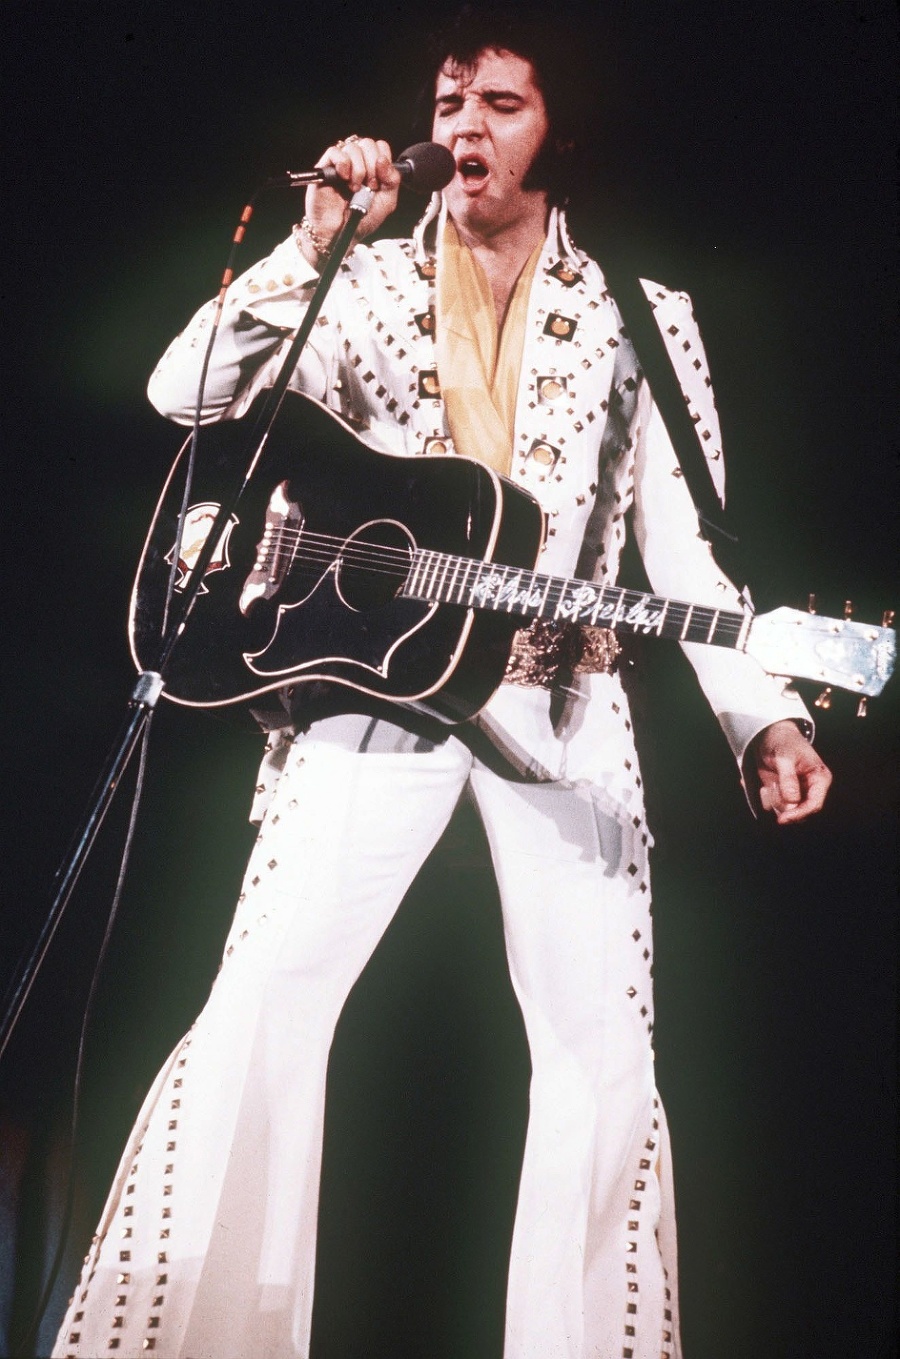 Spevák Elvis Presley